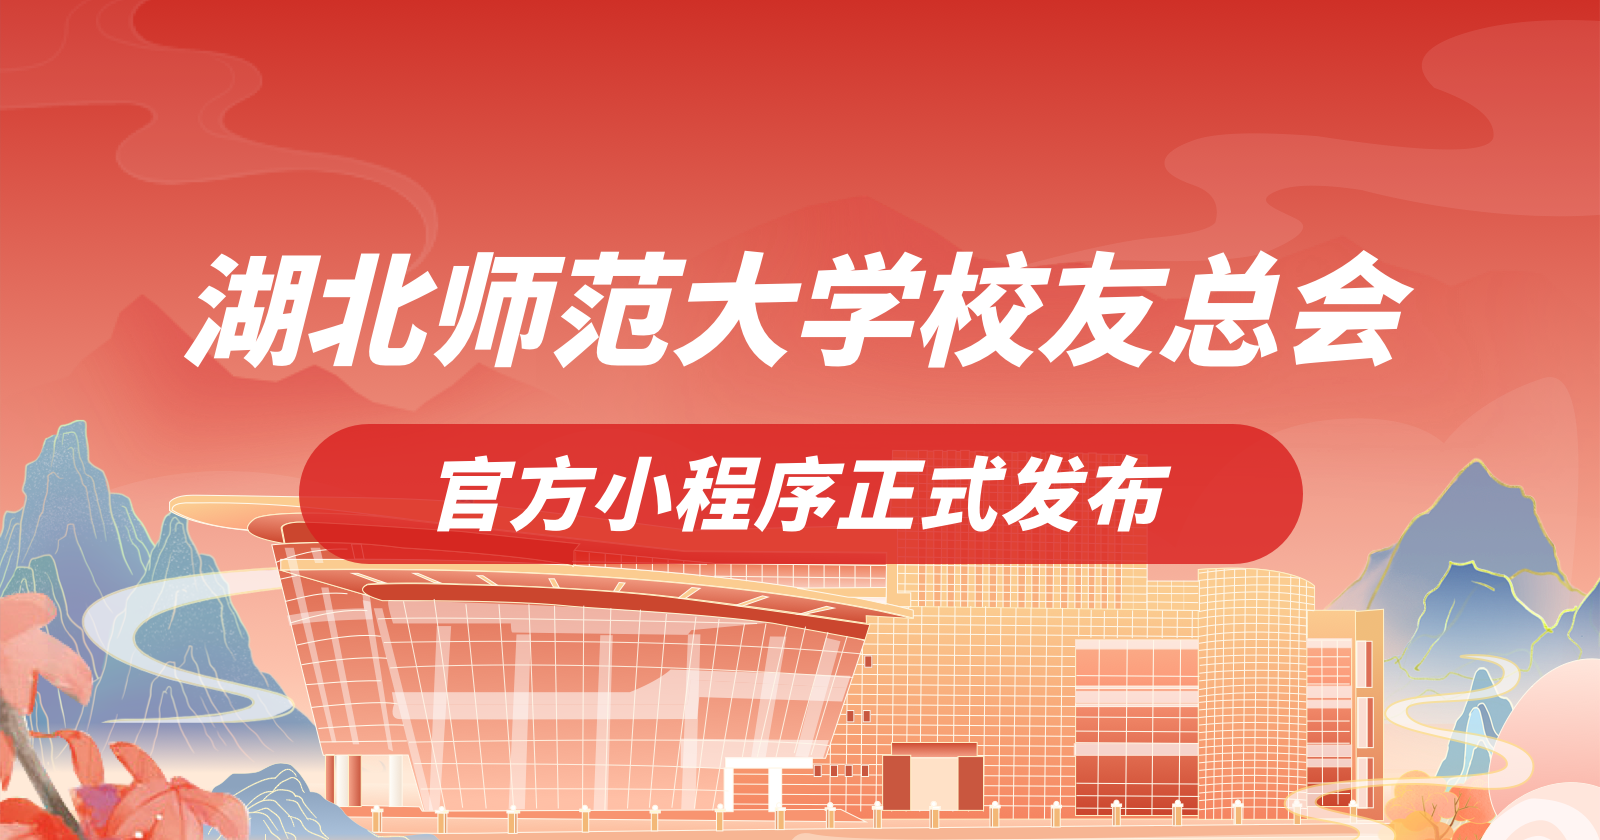 湖北师范大学智慧校友服务平台正式上线发布